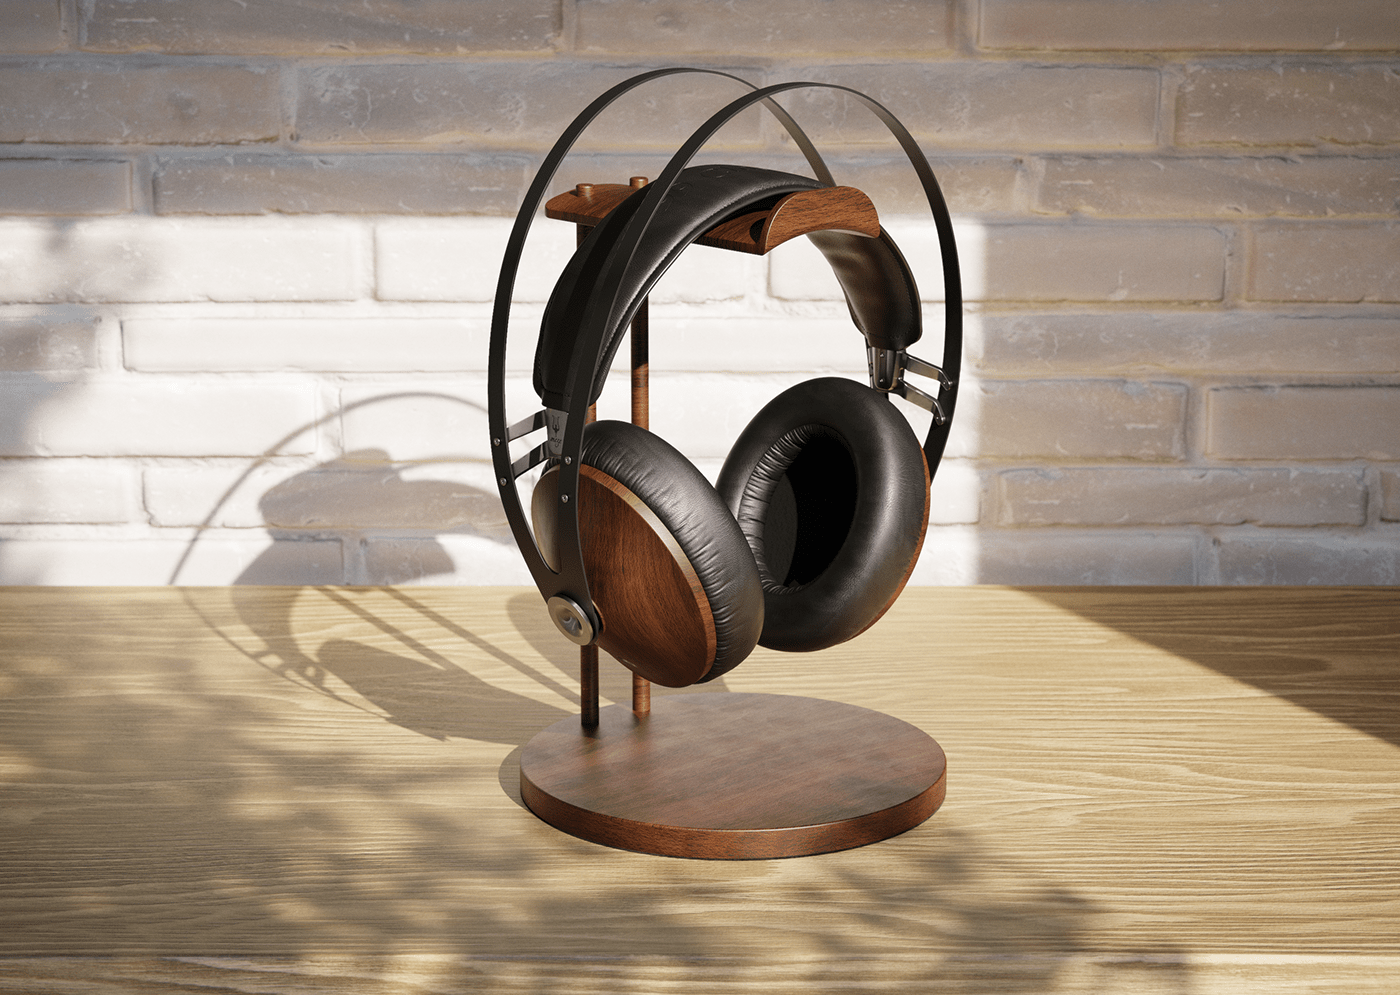 3D blender CGI fusion 360 headphones industrial design  luxcorerender meze productdesign Render